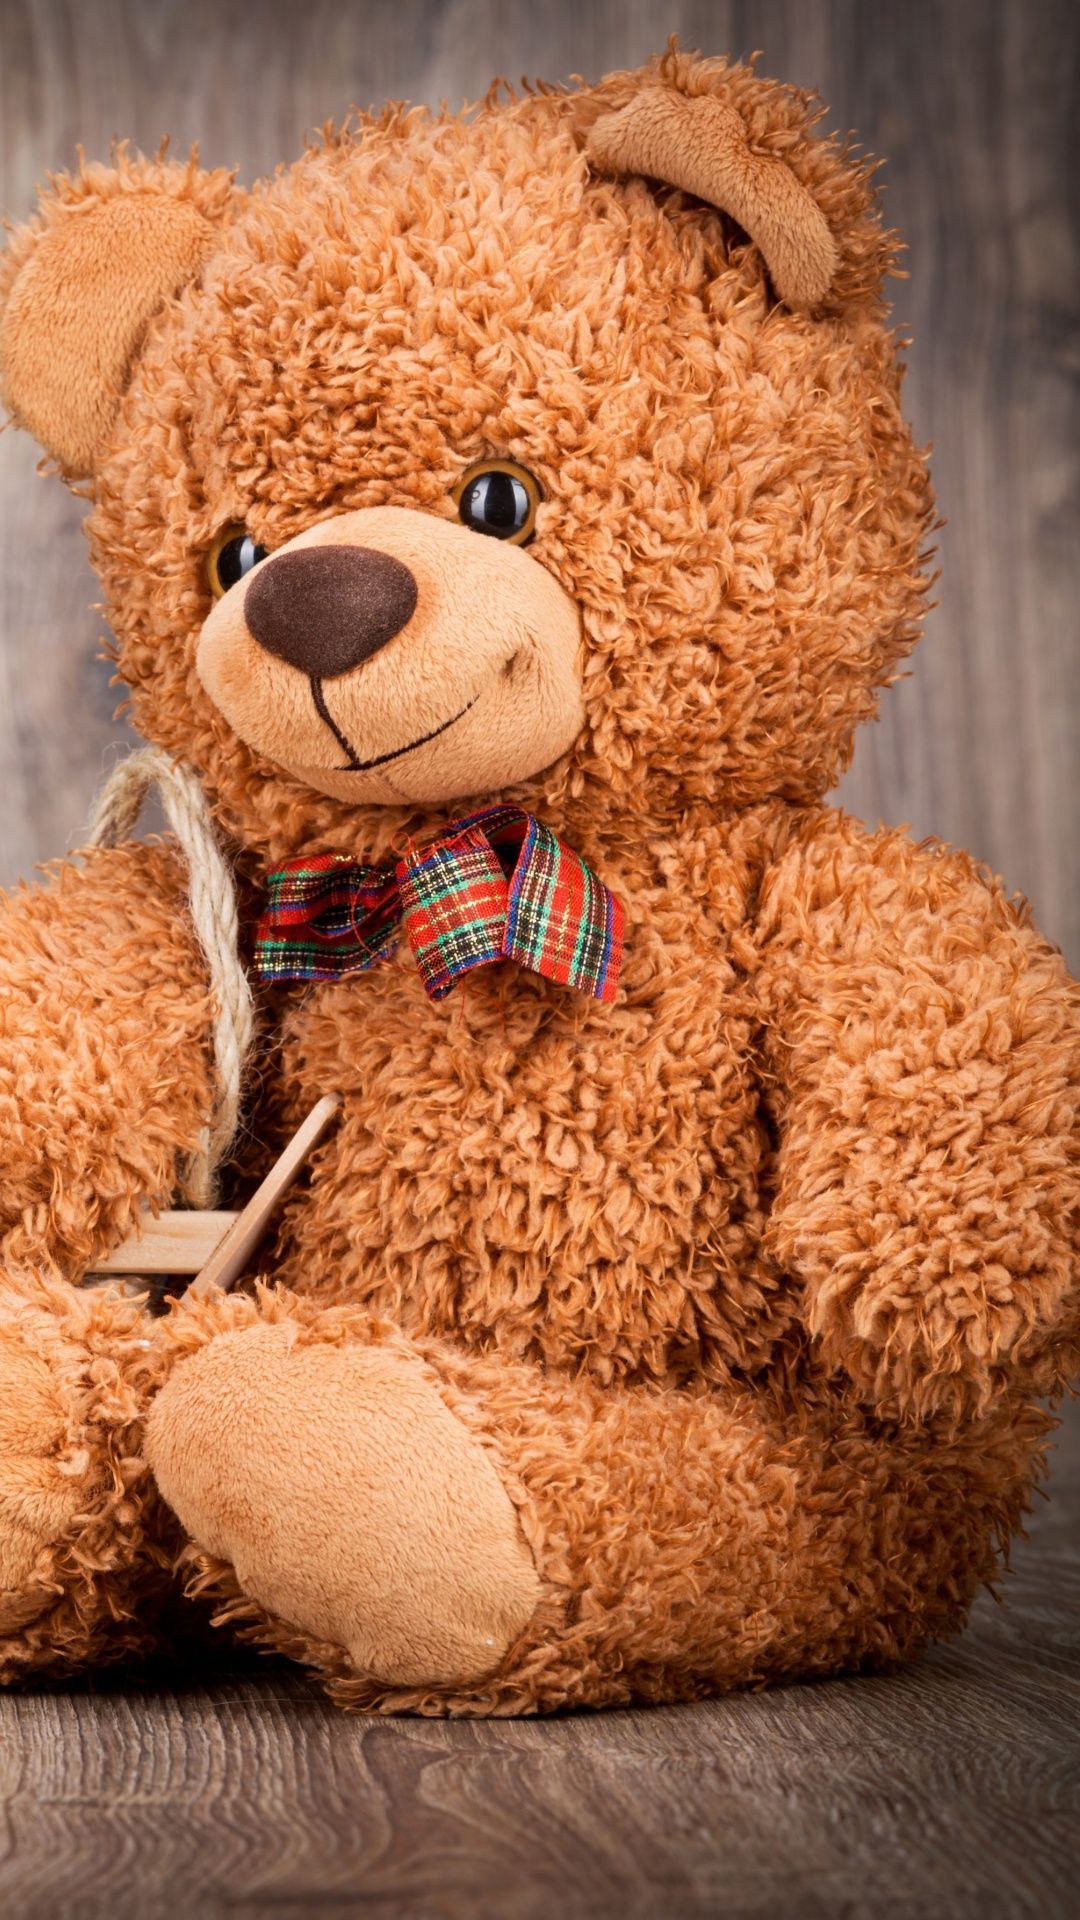 A brown teddy bear sitting on the floor - Teddy bear